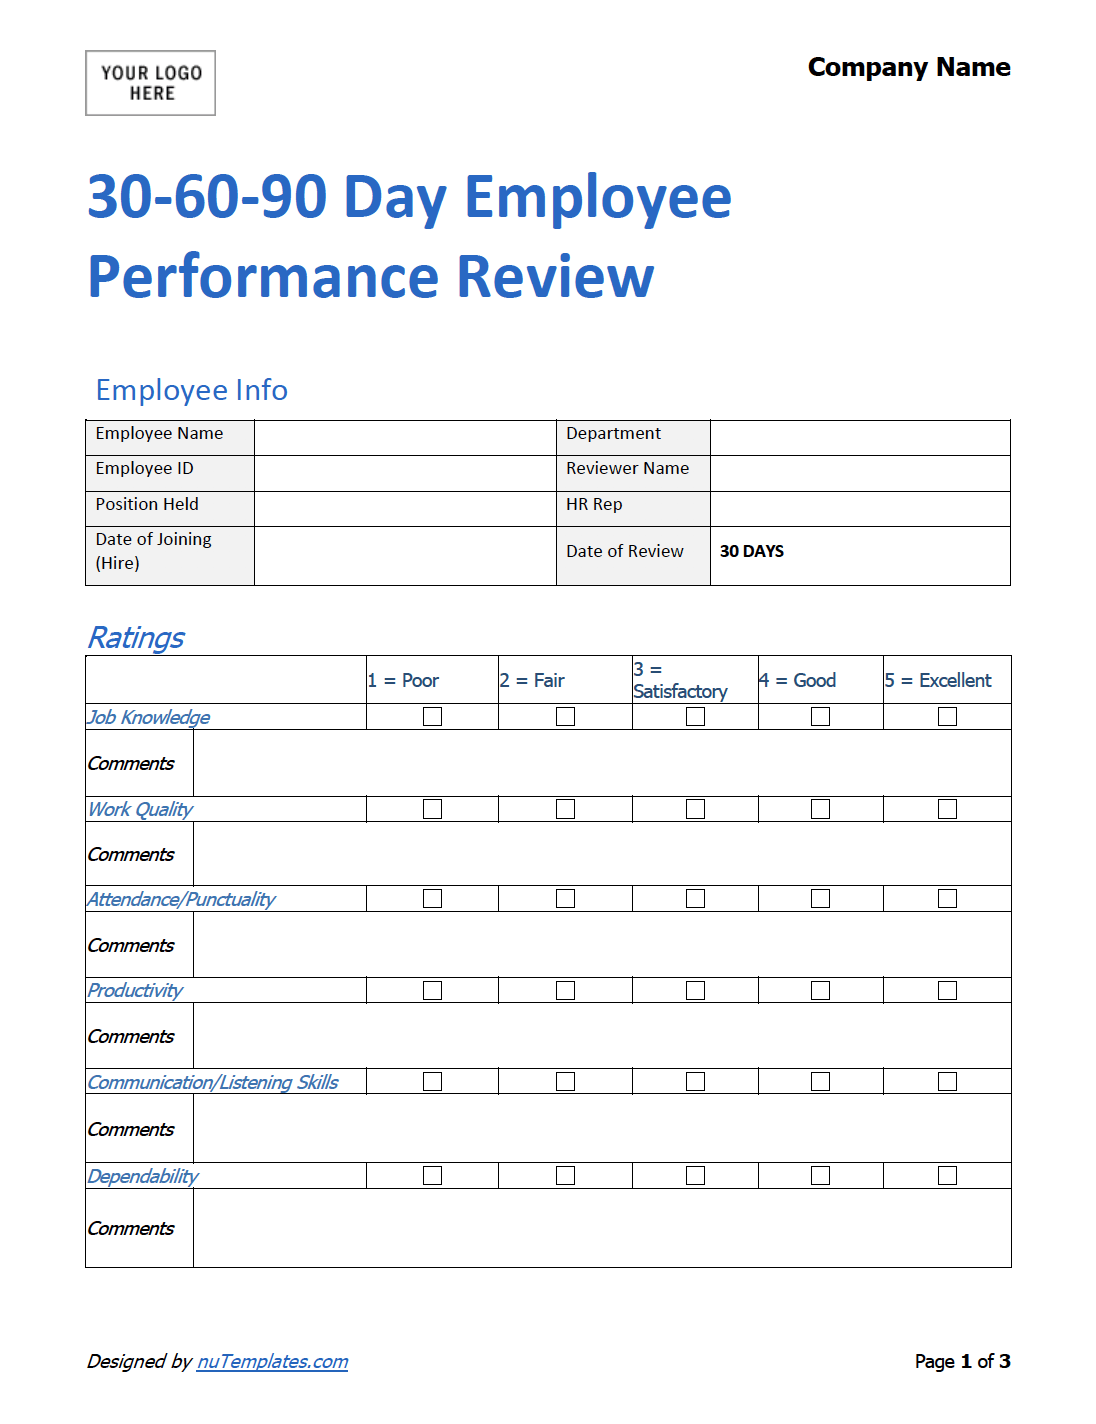 73111840-new-employee-orientation-checklist-labor-employment-free